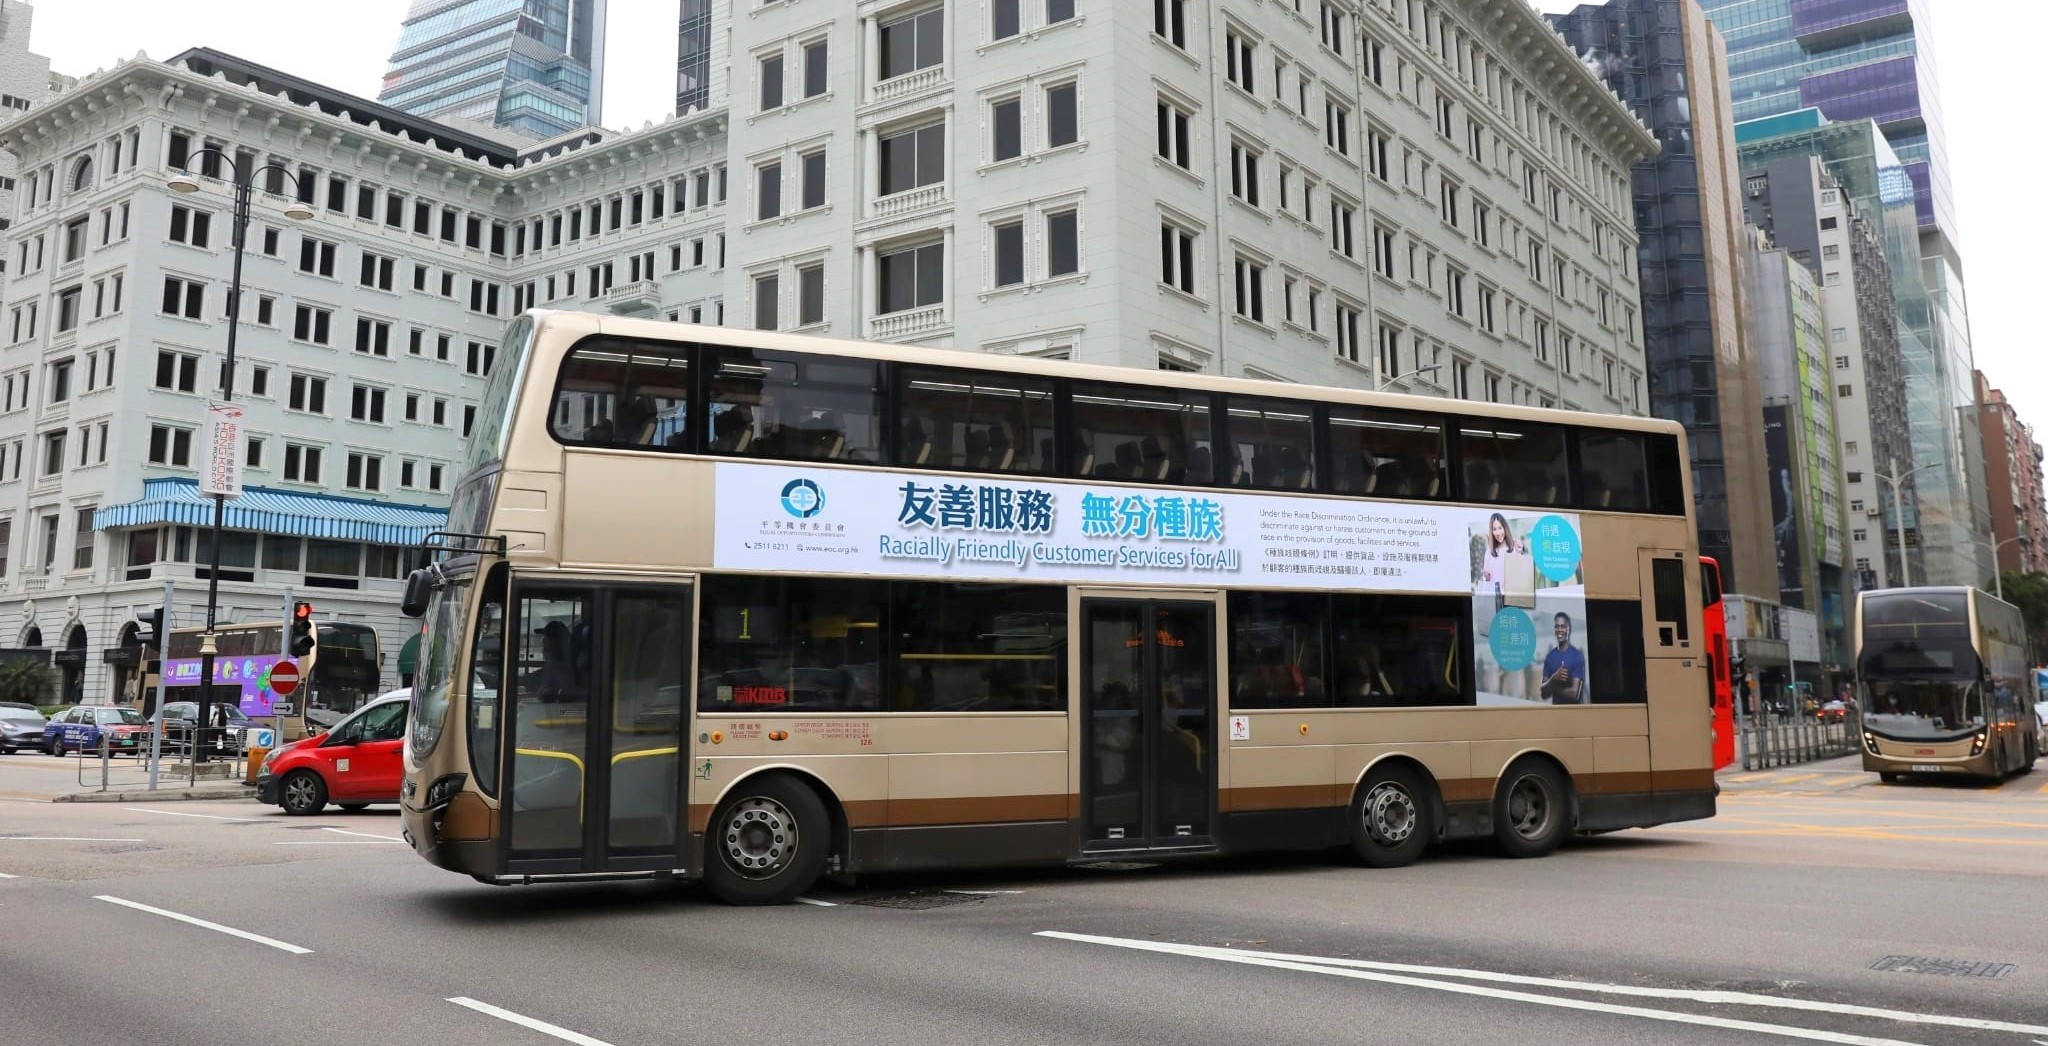 平等机会委员会推出巴士车身广告，推广种族友善顾客服务。